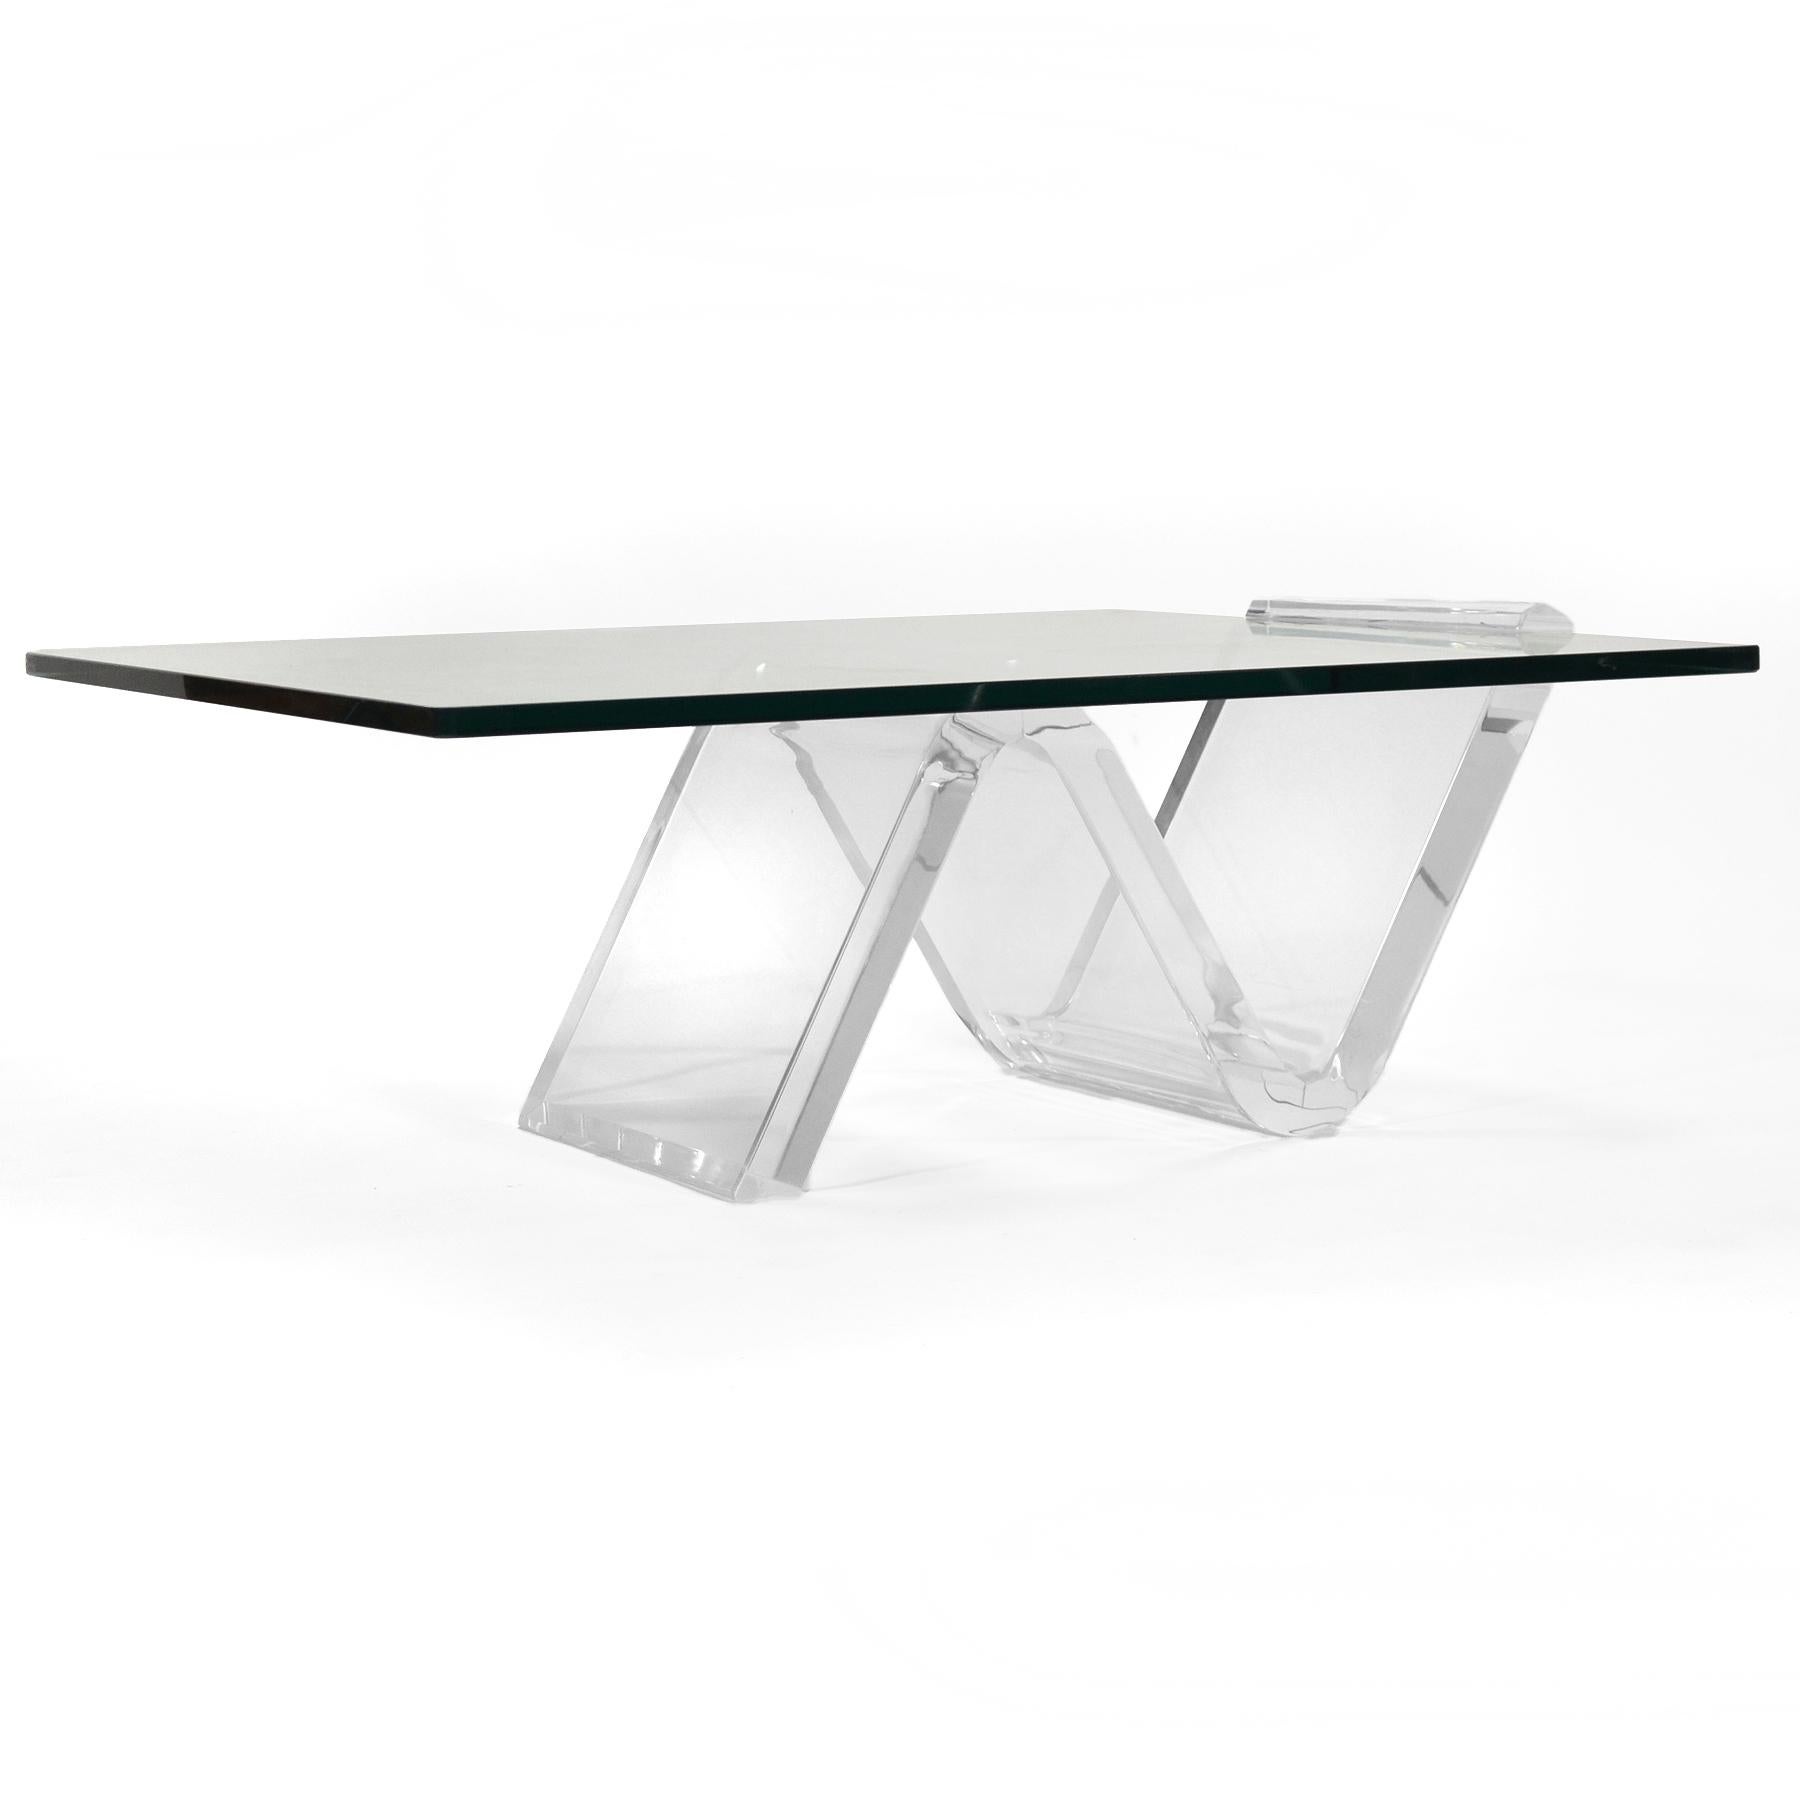 Cette table basse, au design ravissant et spectaculaire, présente un plateau en verre épais intelligemment soutenu et maintenu par la base sculpturale en Lucite en forme de zigzag.